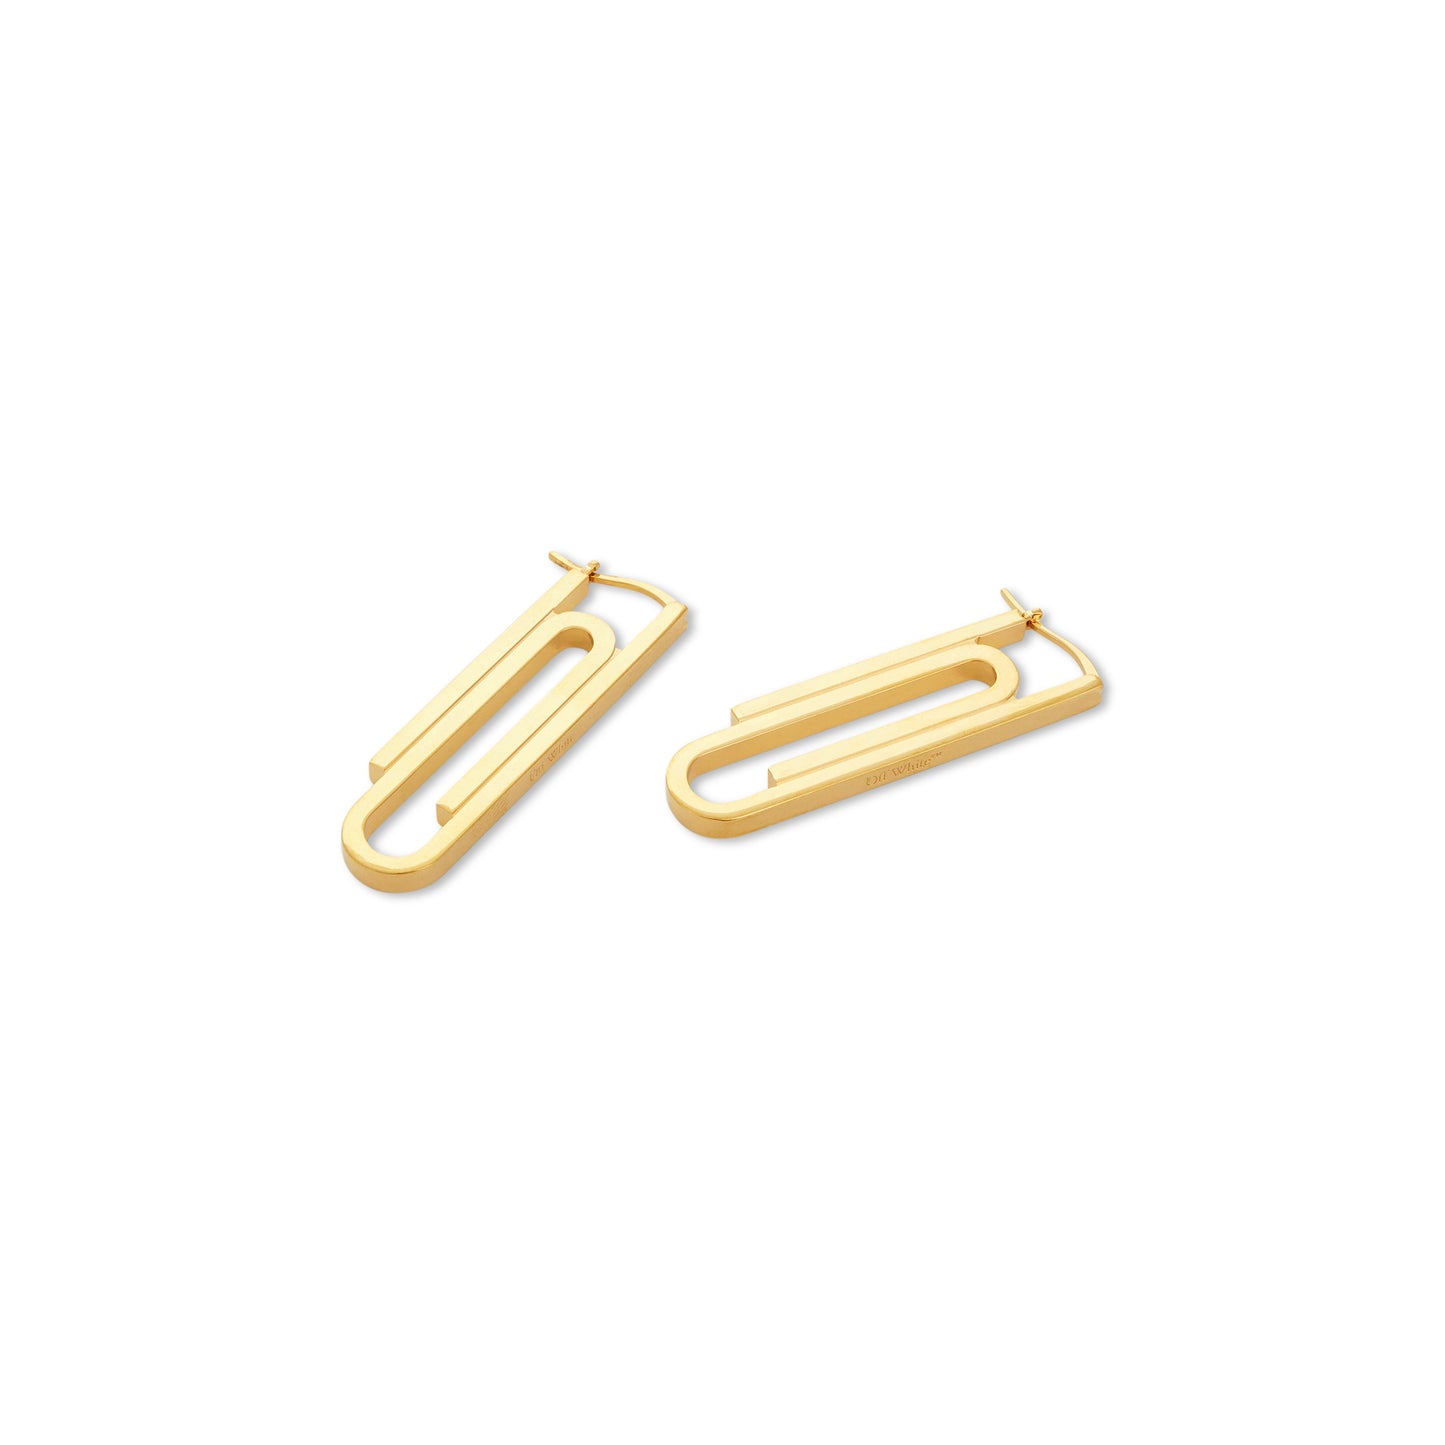 Paperclip Earrings in Gold